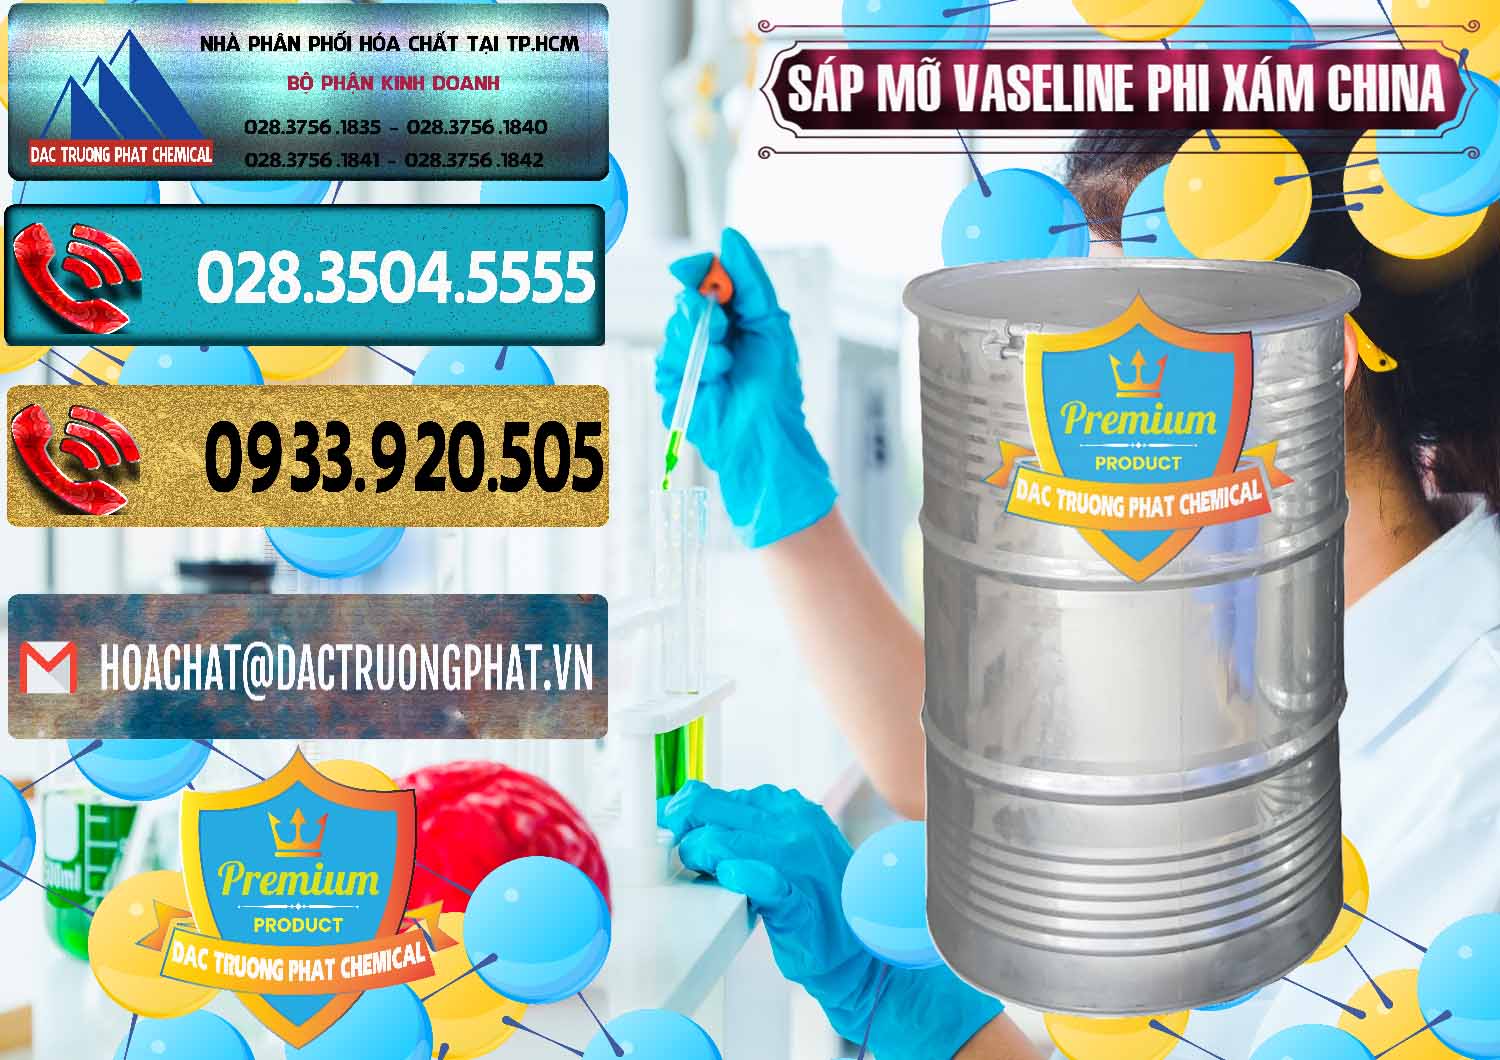 Cty chuyên bán _ cung cấp Sáp Mỡ Vaseline Phi Xám Trung Quốc China - 0291 - Nơi phân phối & bán hóa chất tại TP.HCM - hoachatdetnhuom.com